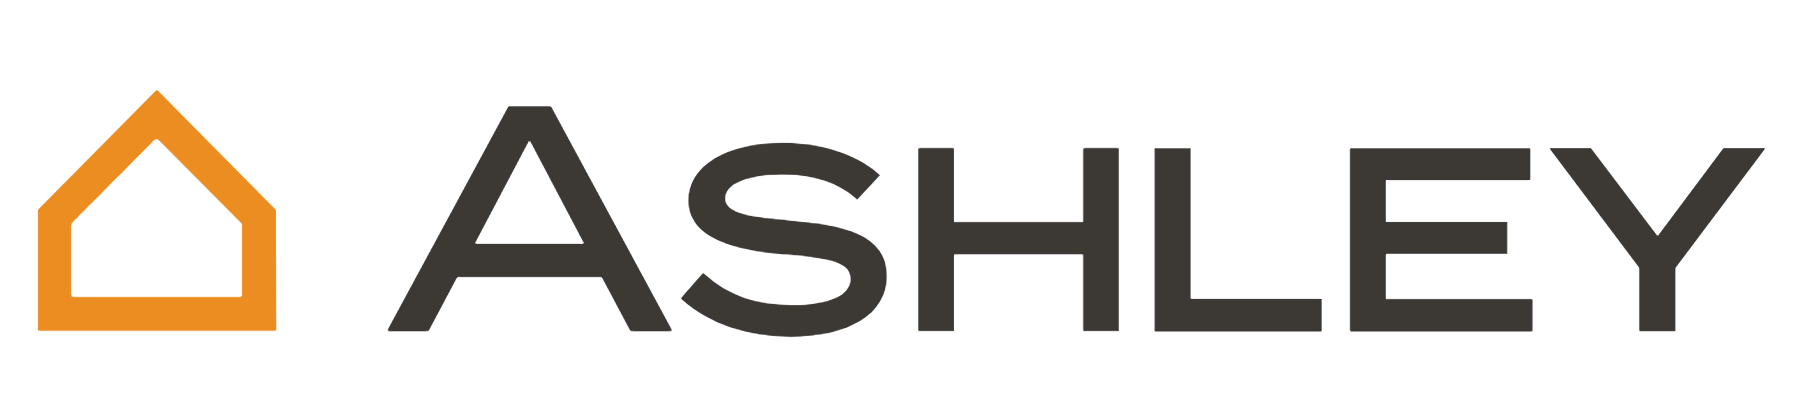 ashley-logo